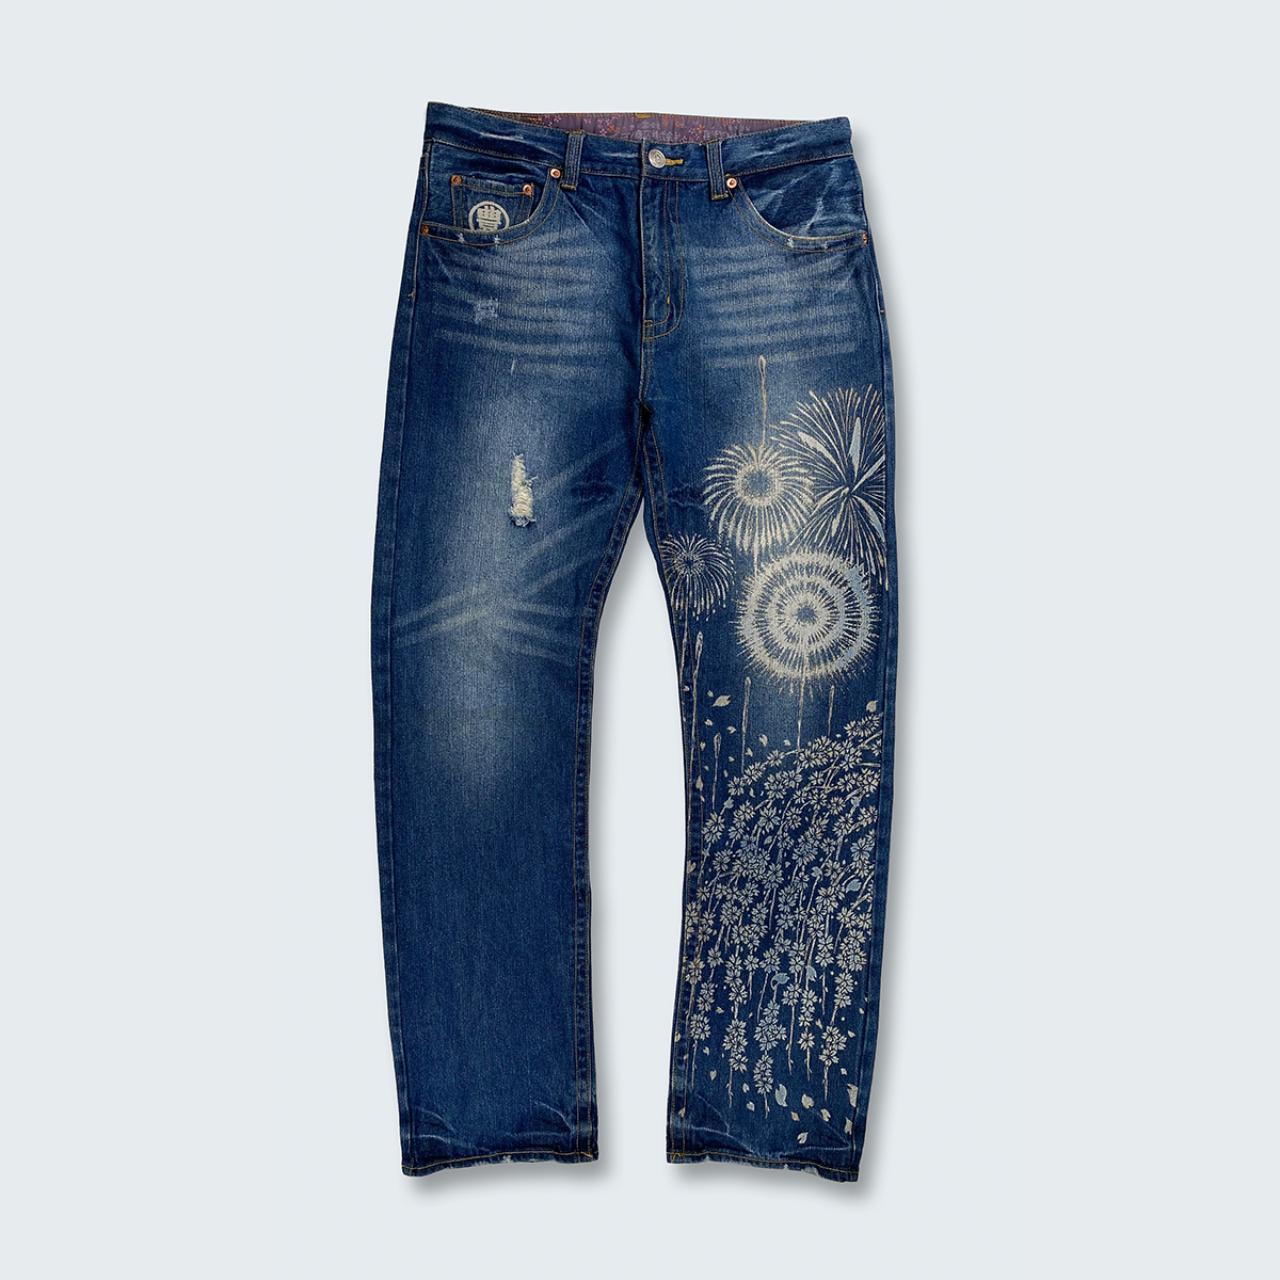 Authentic Vintage Japanese Denim Jeans  (33")